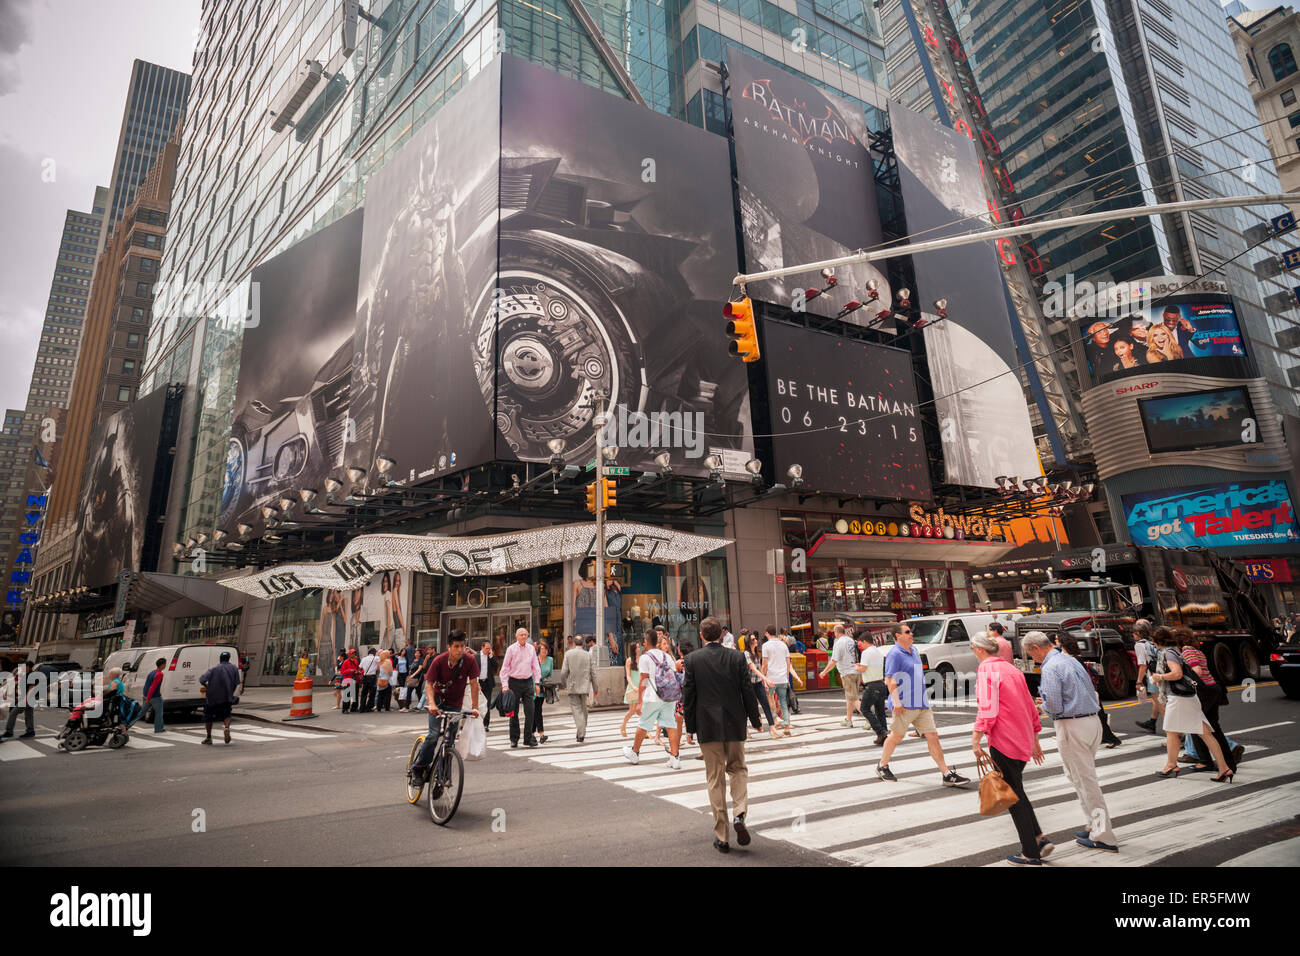 Passant devant la publicité pour RocksteadyStudio nouveautés jeu vidéo, "Batman : Arkham Knight ' sur un panneau d'affichage à Times Square à New York le Mercredi, Mai 27, 2015. Le jeu, la troisième partie de la trilogie 'Arkham' sera disponible le 23 juin. (© Richard B. Levine) Banque D'Images